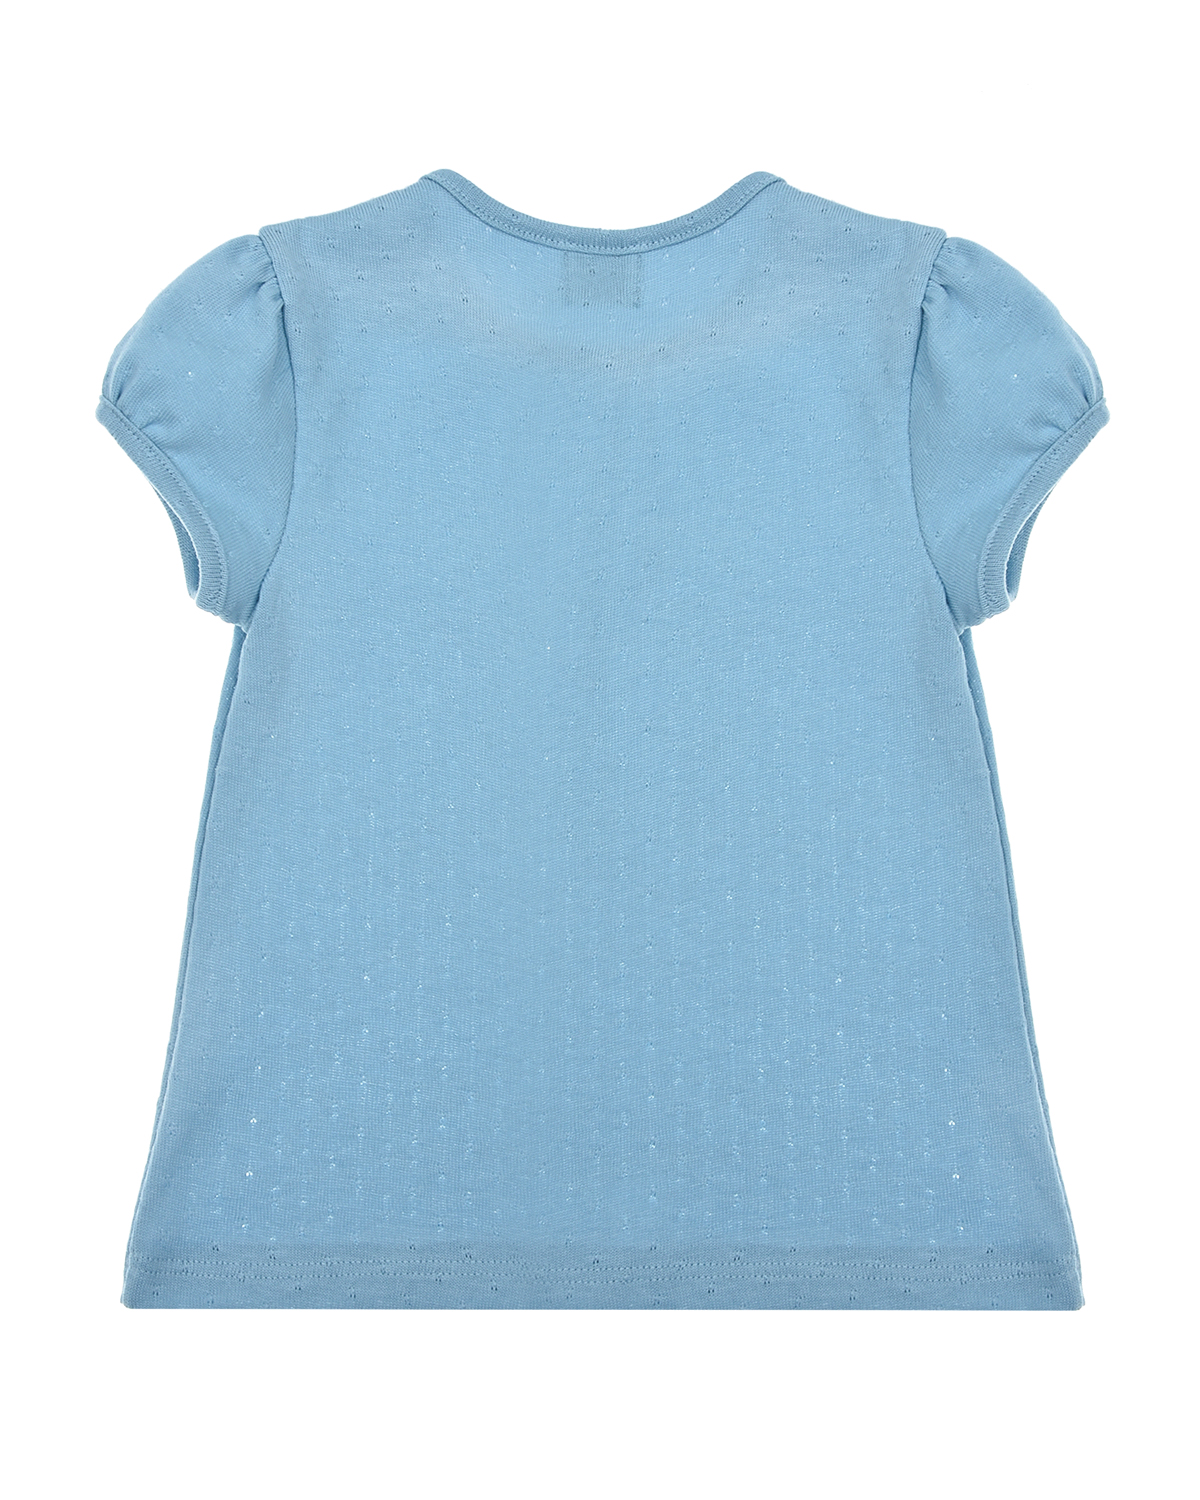 Голубая футболка с рукавами-фонариками Sanetta fiftyseven детская, размер 62, цвет голубой - фото 2